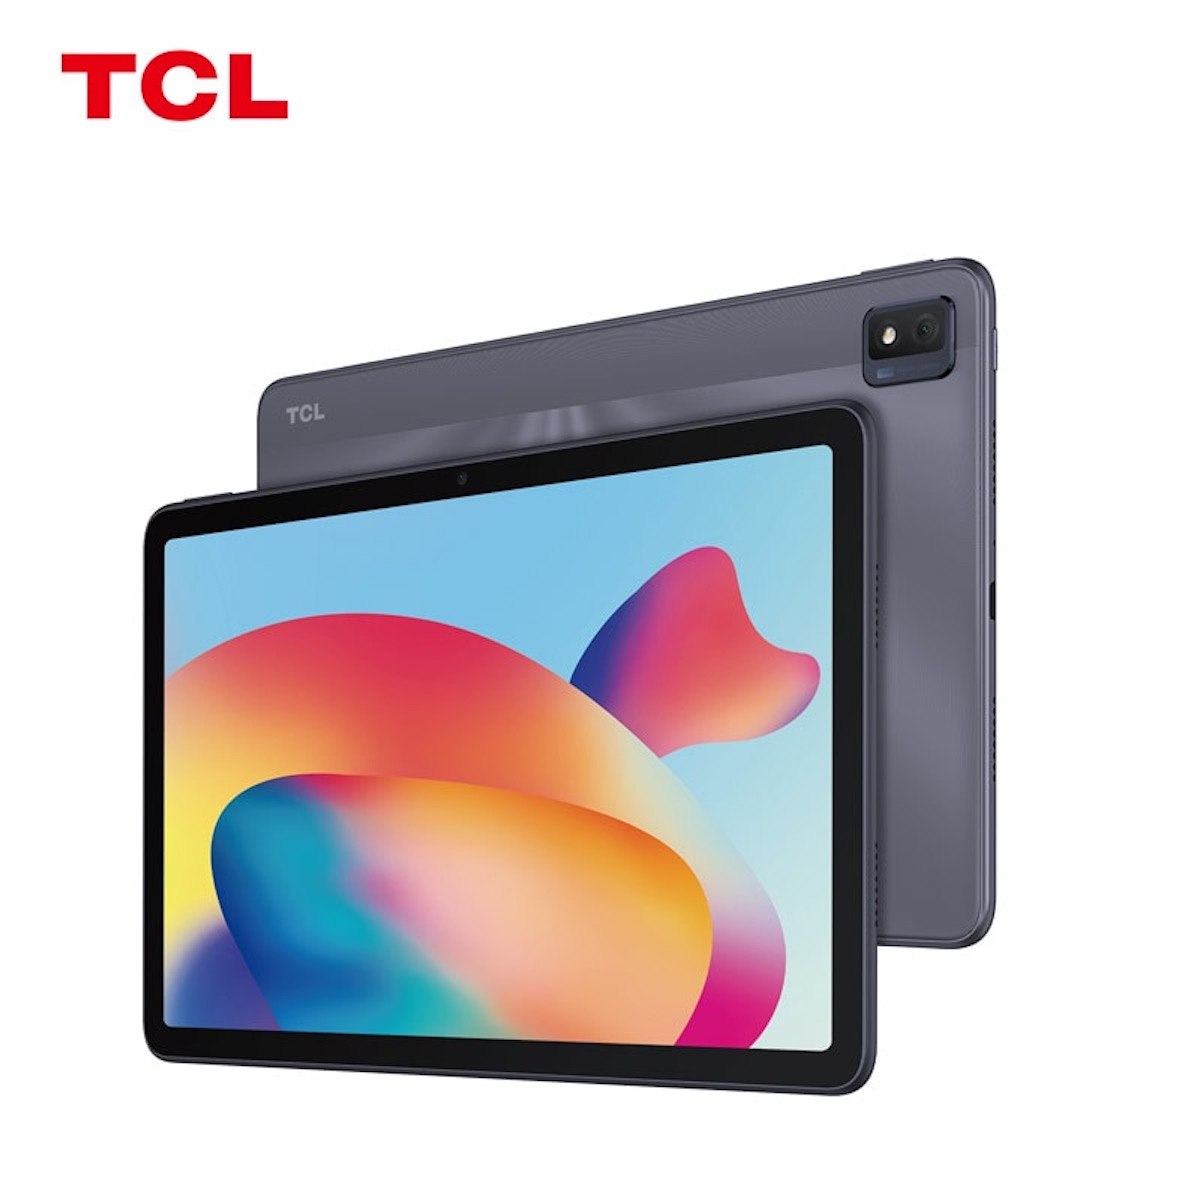 TCL ukázalo tablet Tab Max s velkým displejem